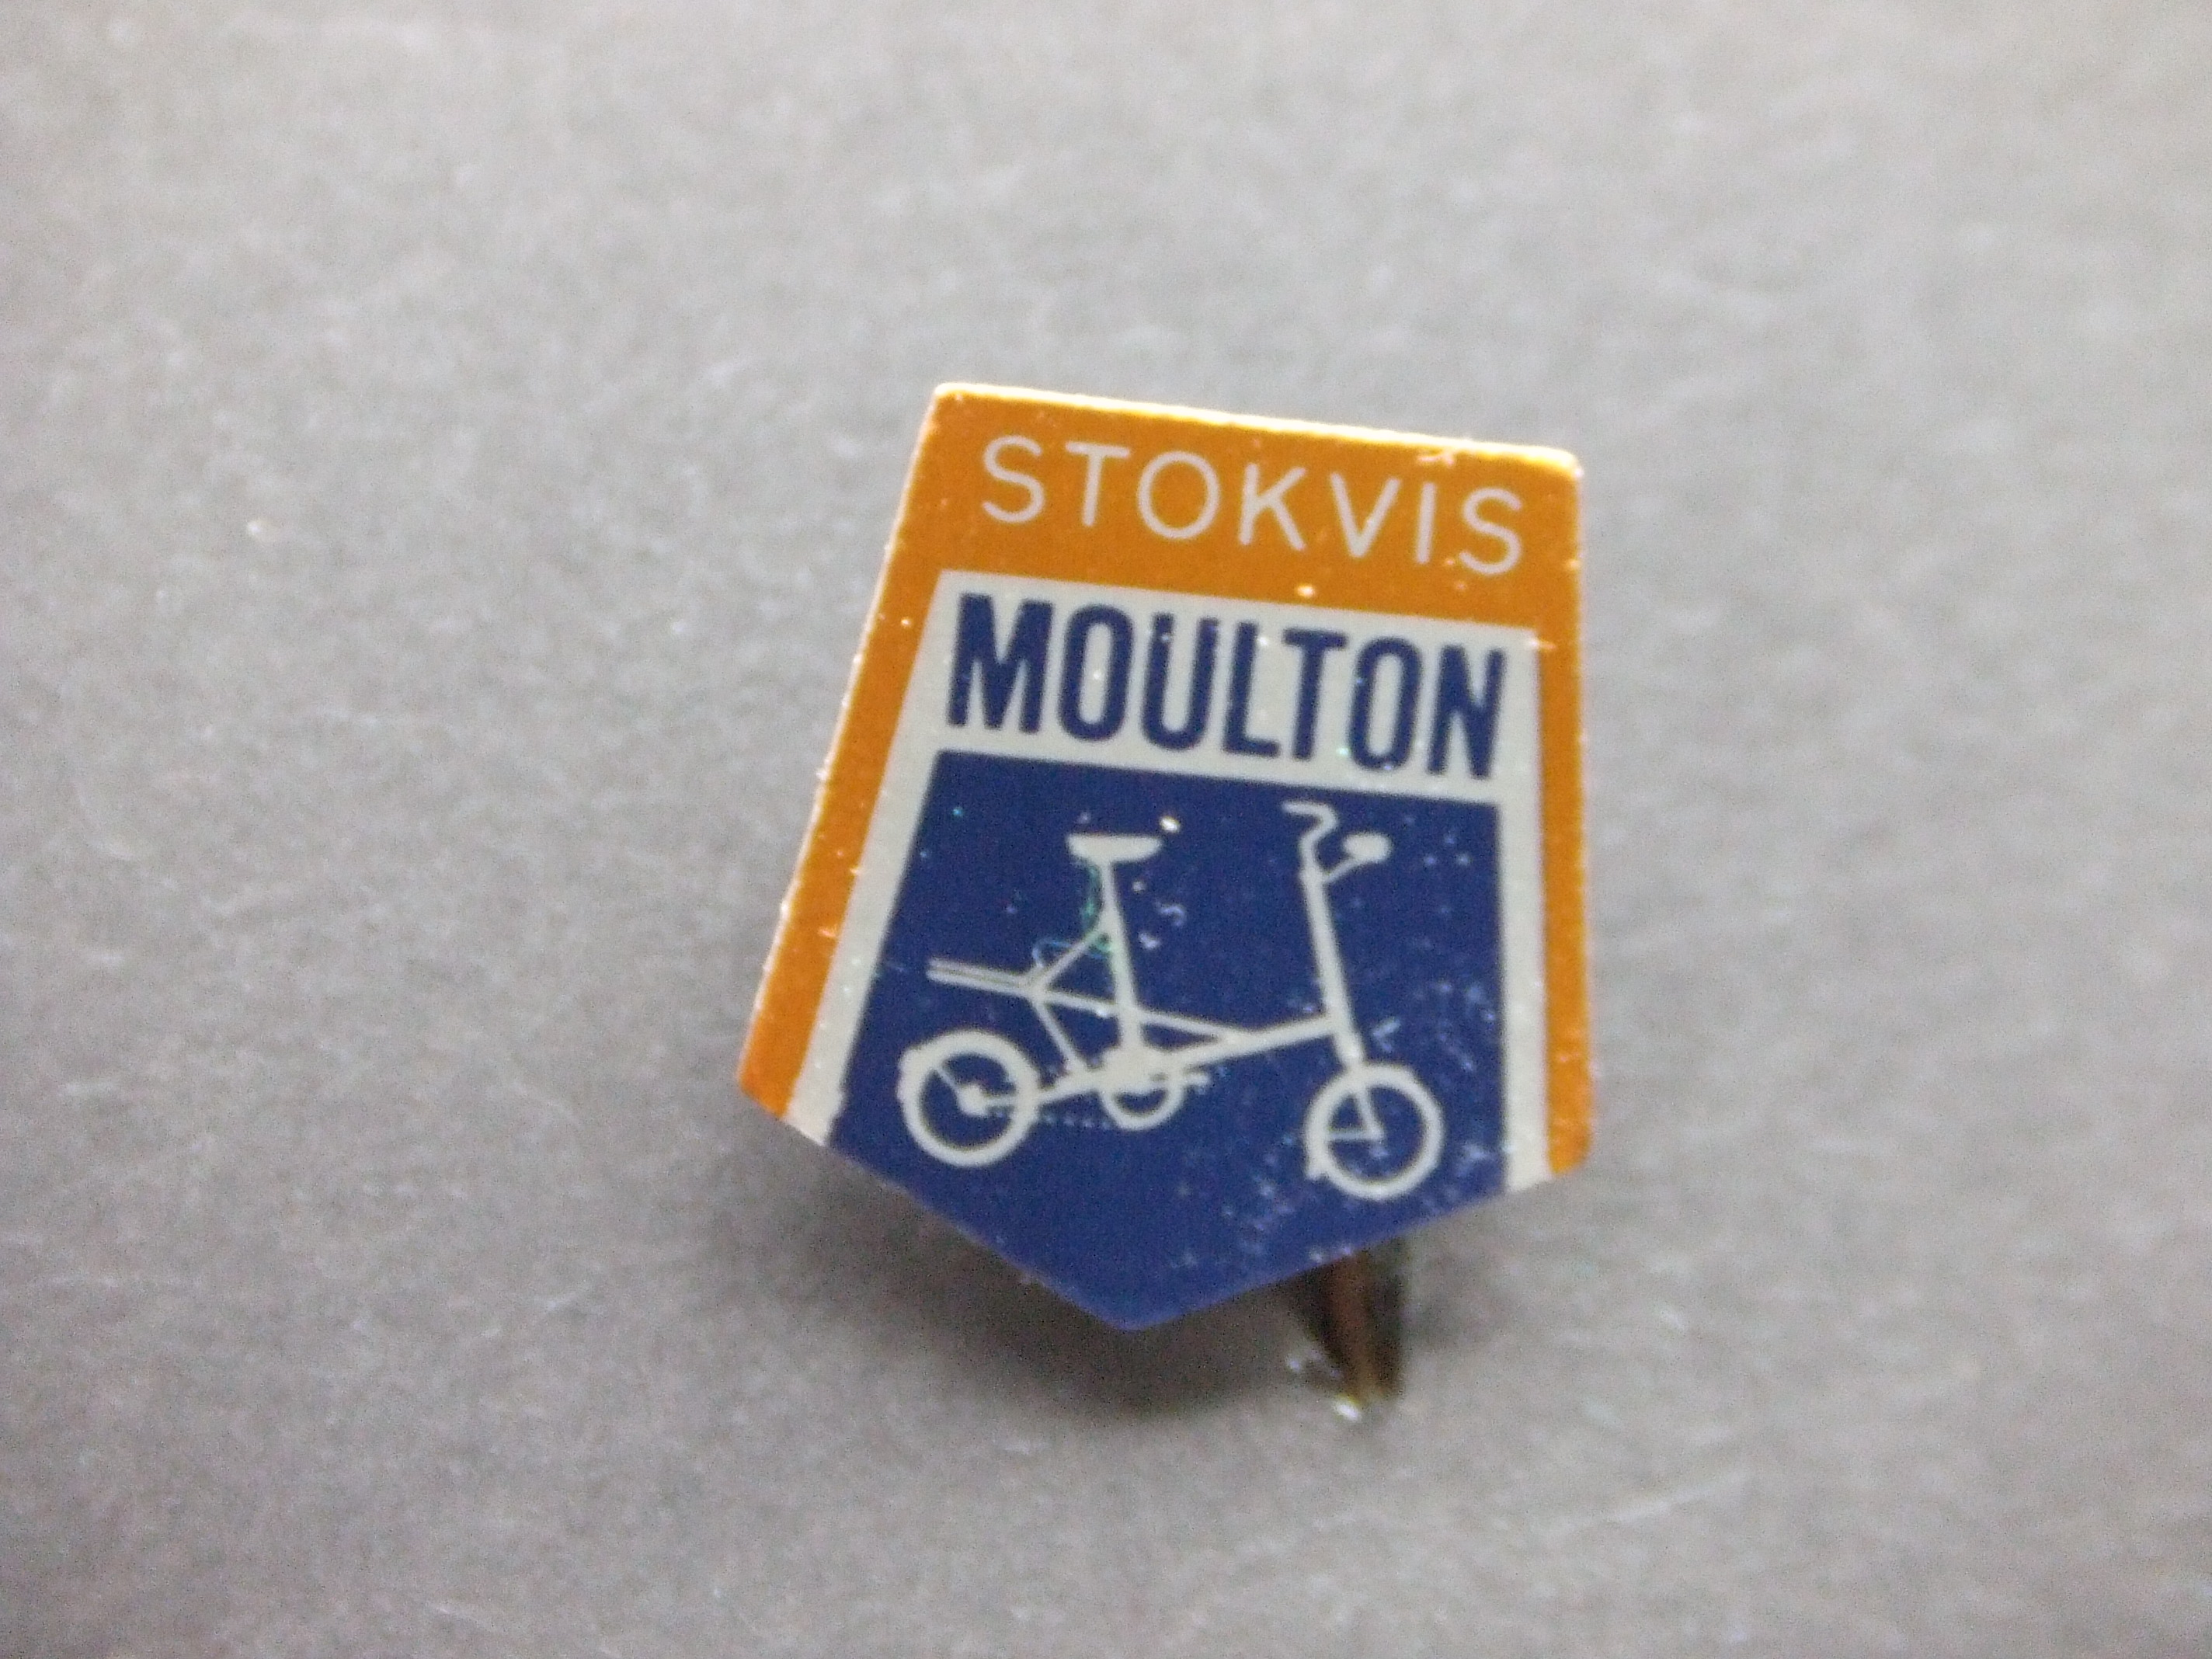 Stokvis-Moulton RS Stokvis vouwfiets